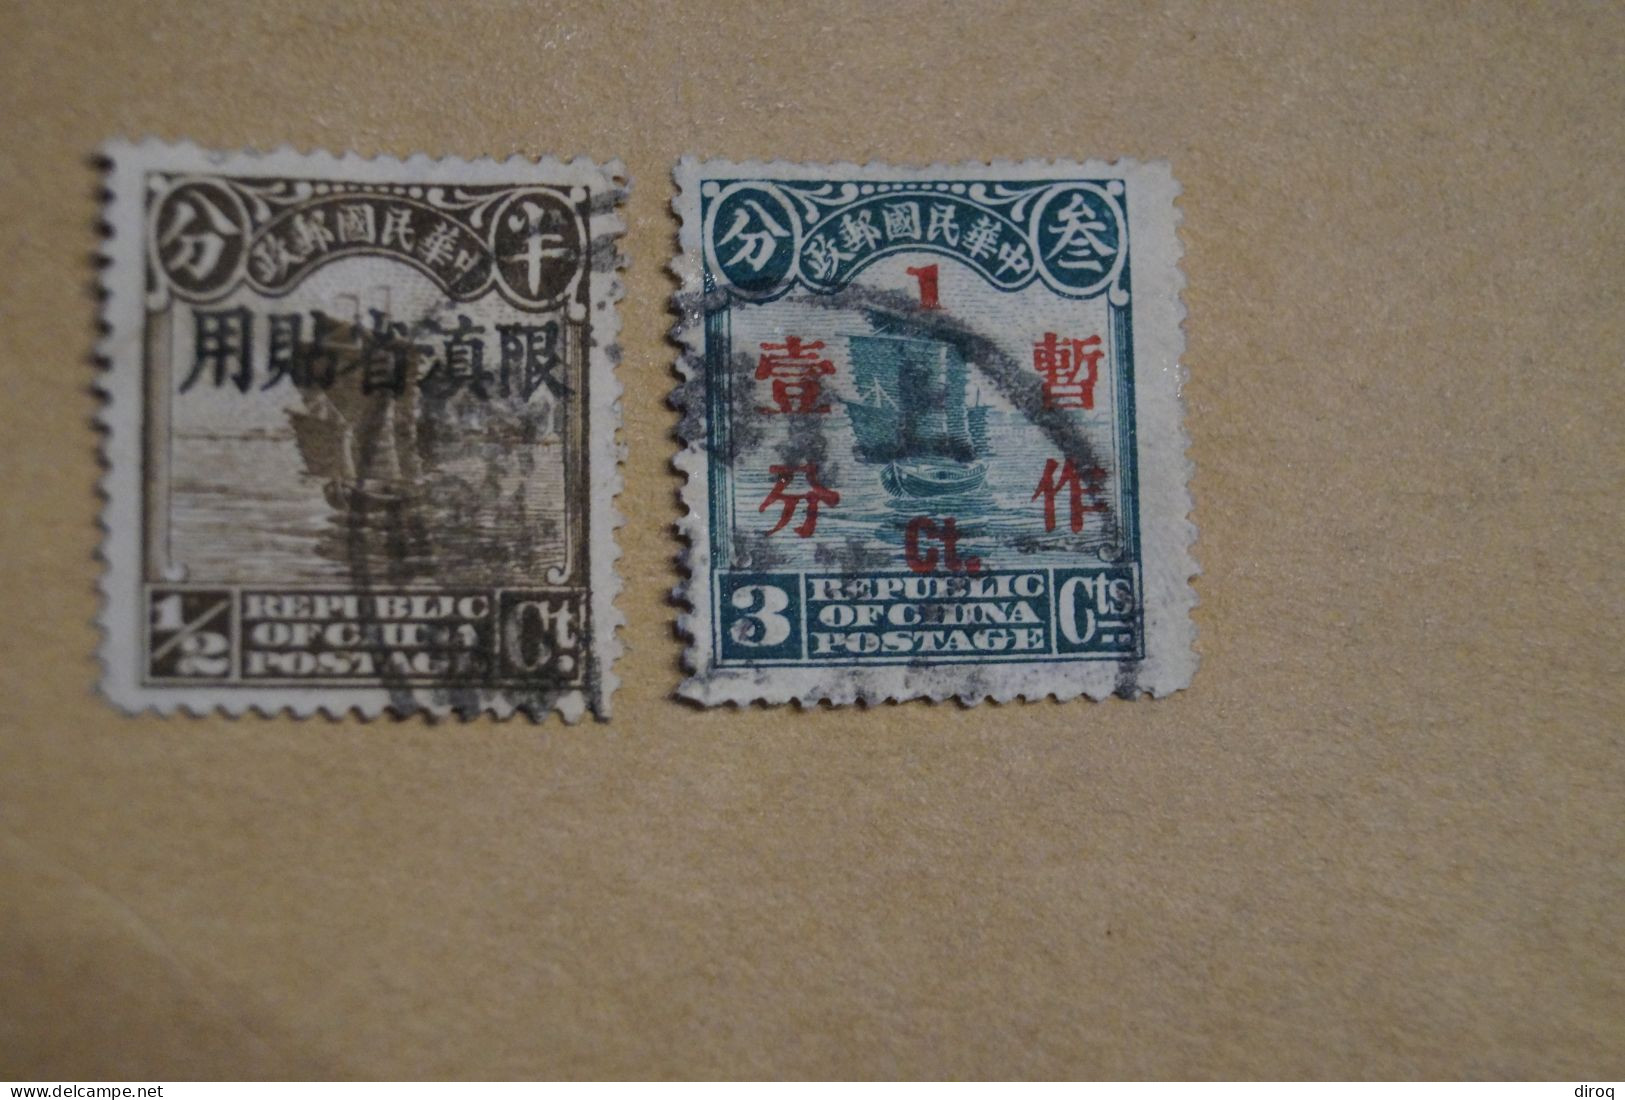 Chine,Chines,lot De 48 Timbres Oblitérés,1913 - 1923,certains Avec Surcharges, Pour Collection,collector - 1912-1949 Republik